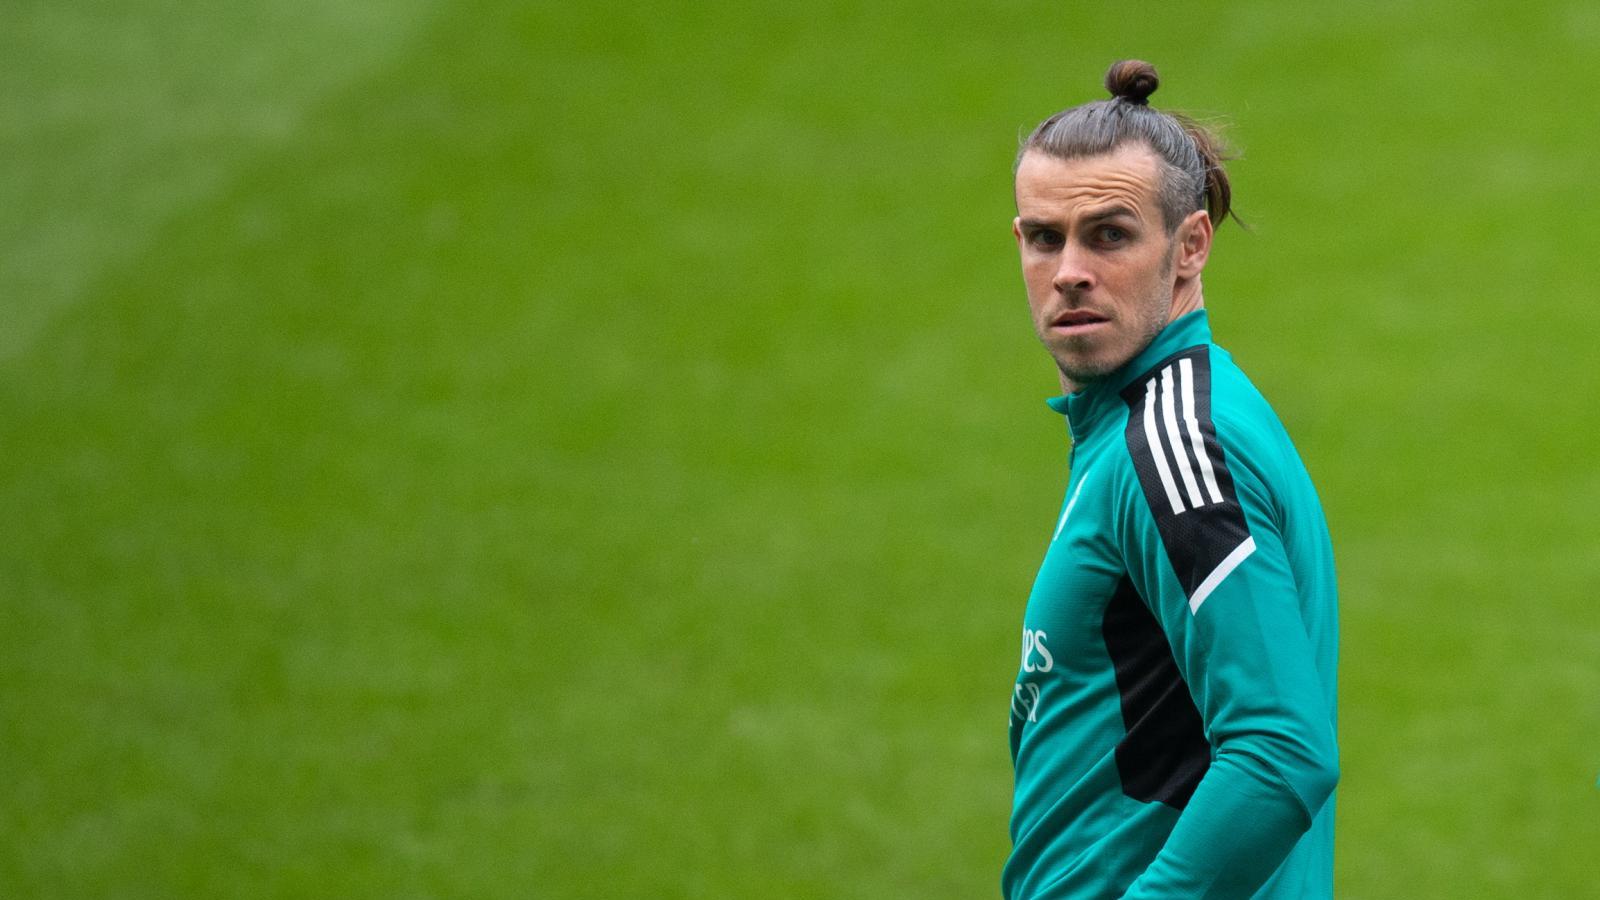 El Real Madrid confirma la lesión de Bale